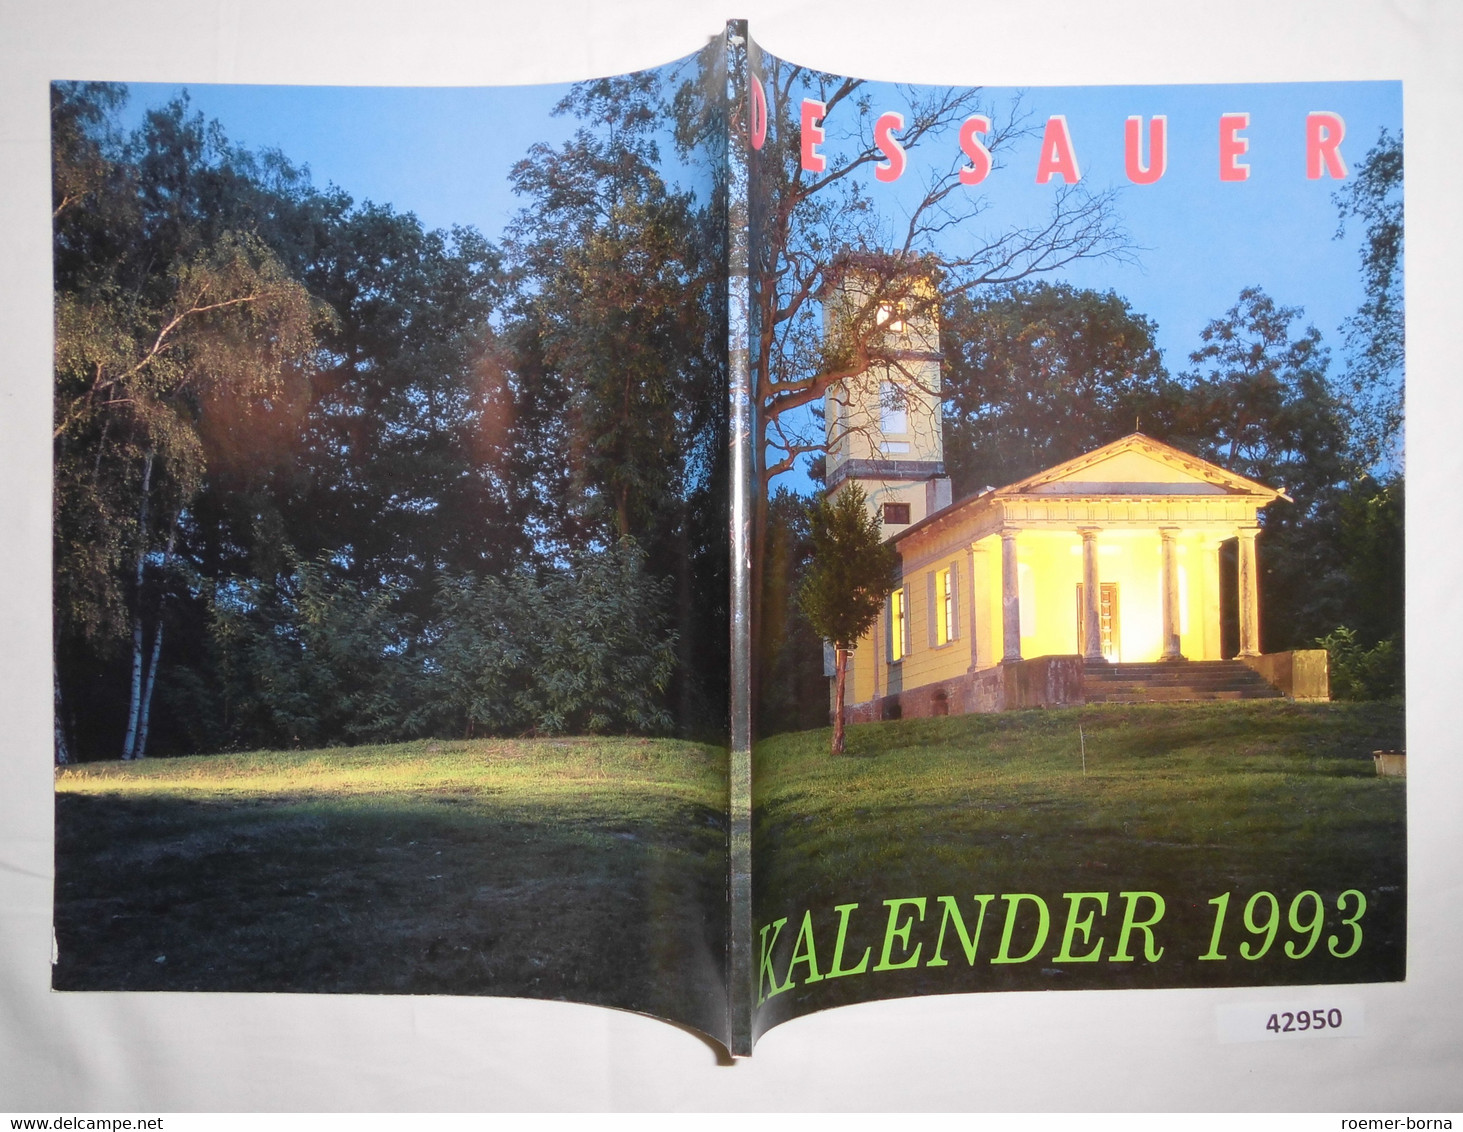 Dessauer Kalender 1993 (37. Jahrgang) - Calendriers